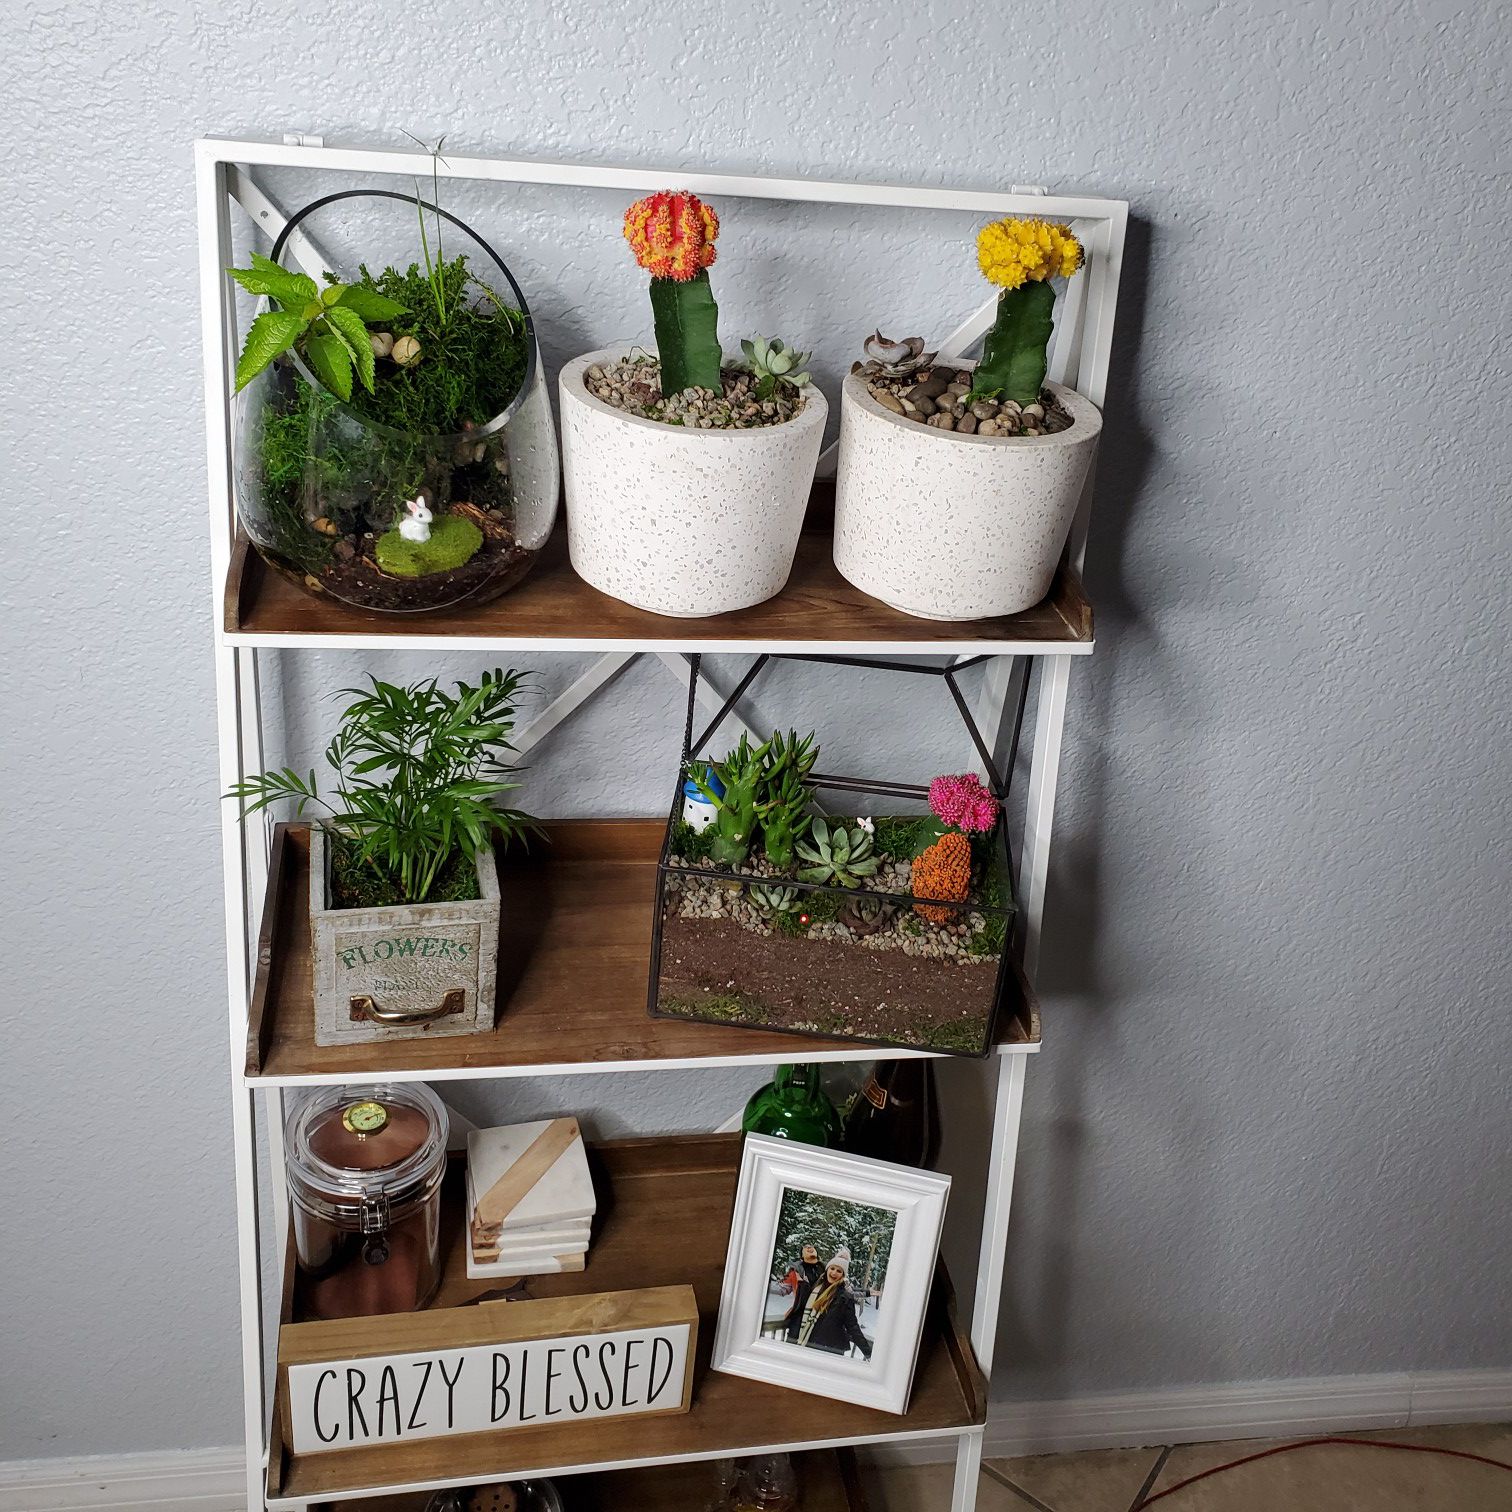 Plants and shelf.